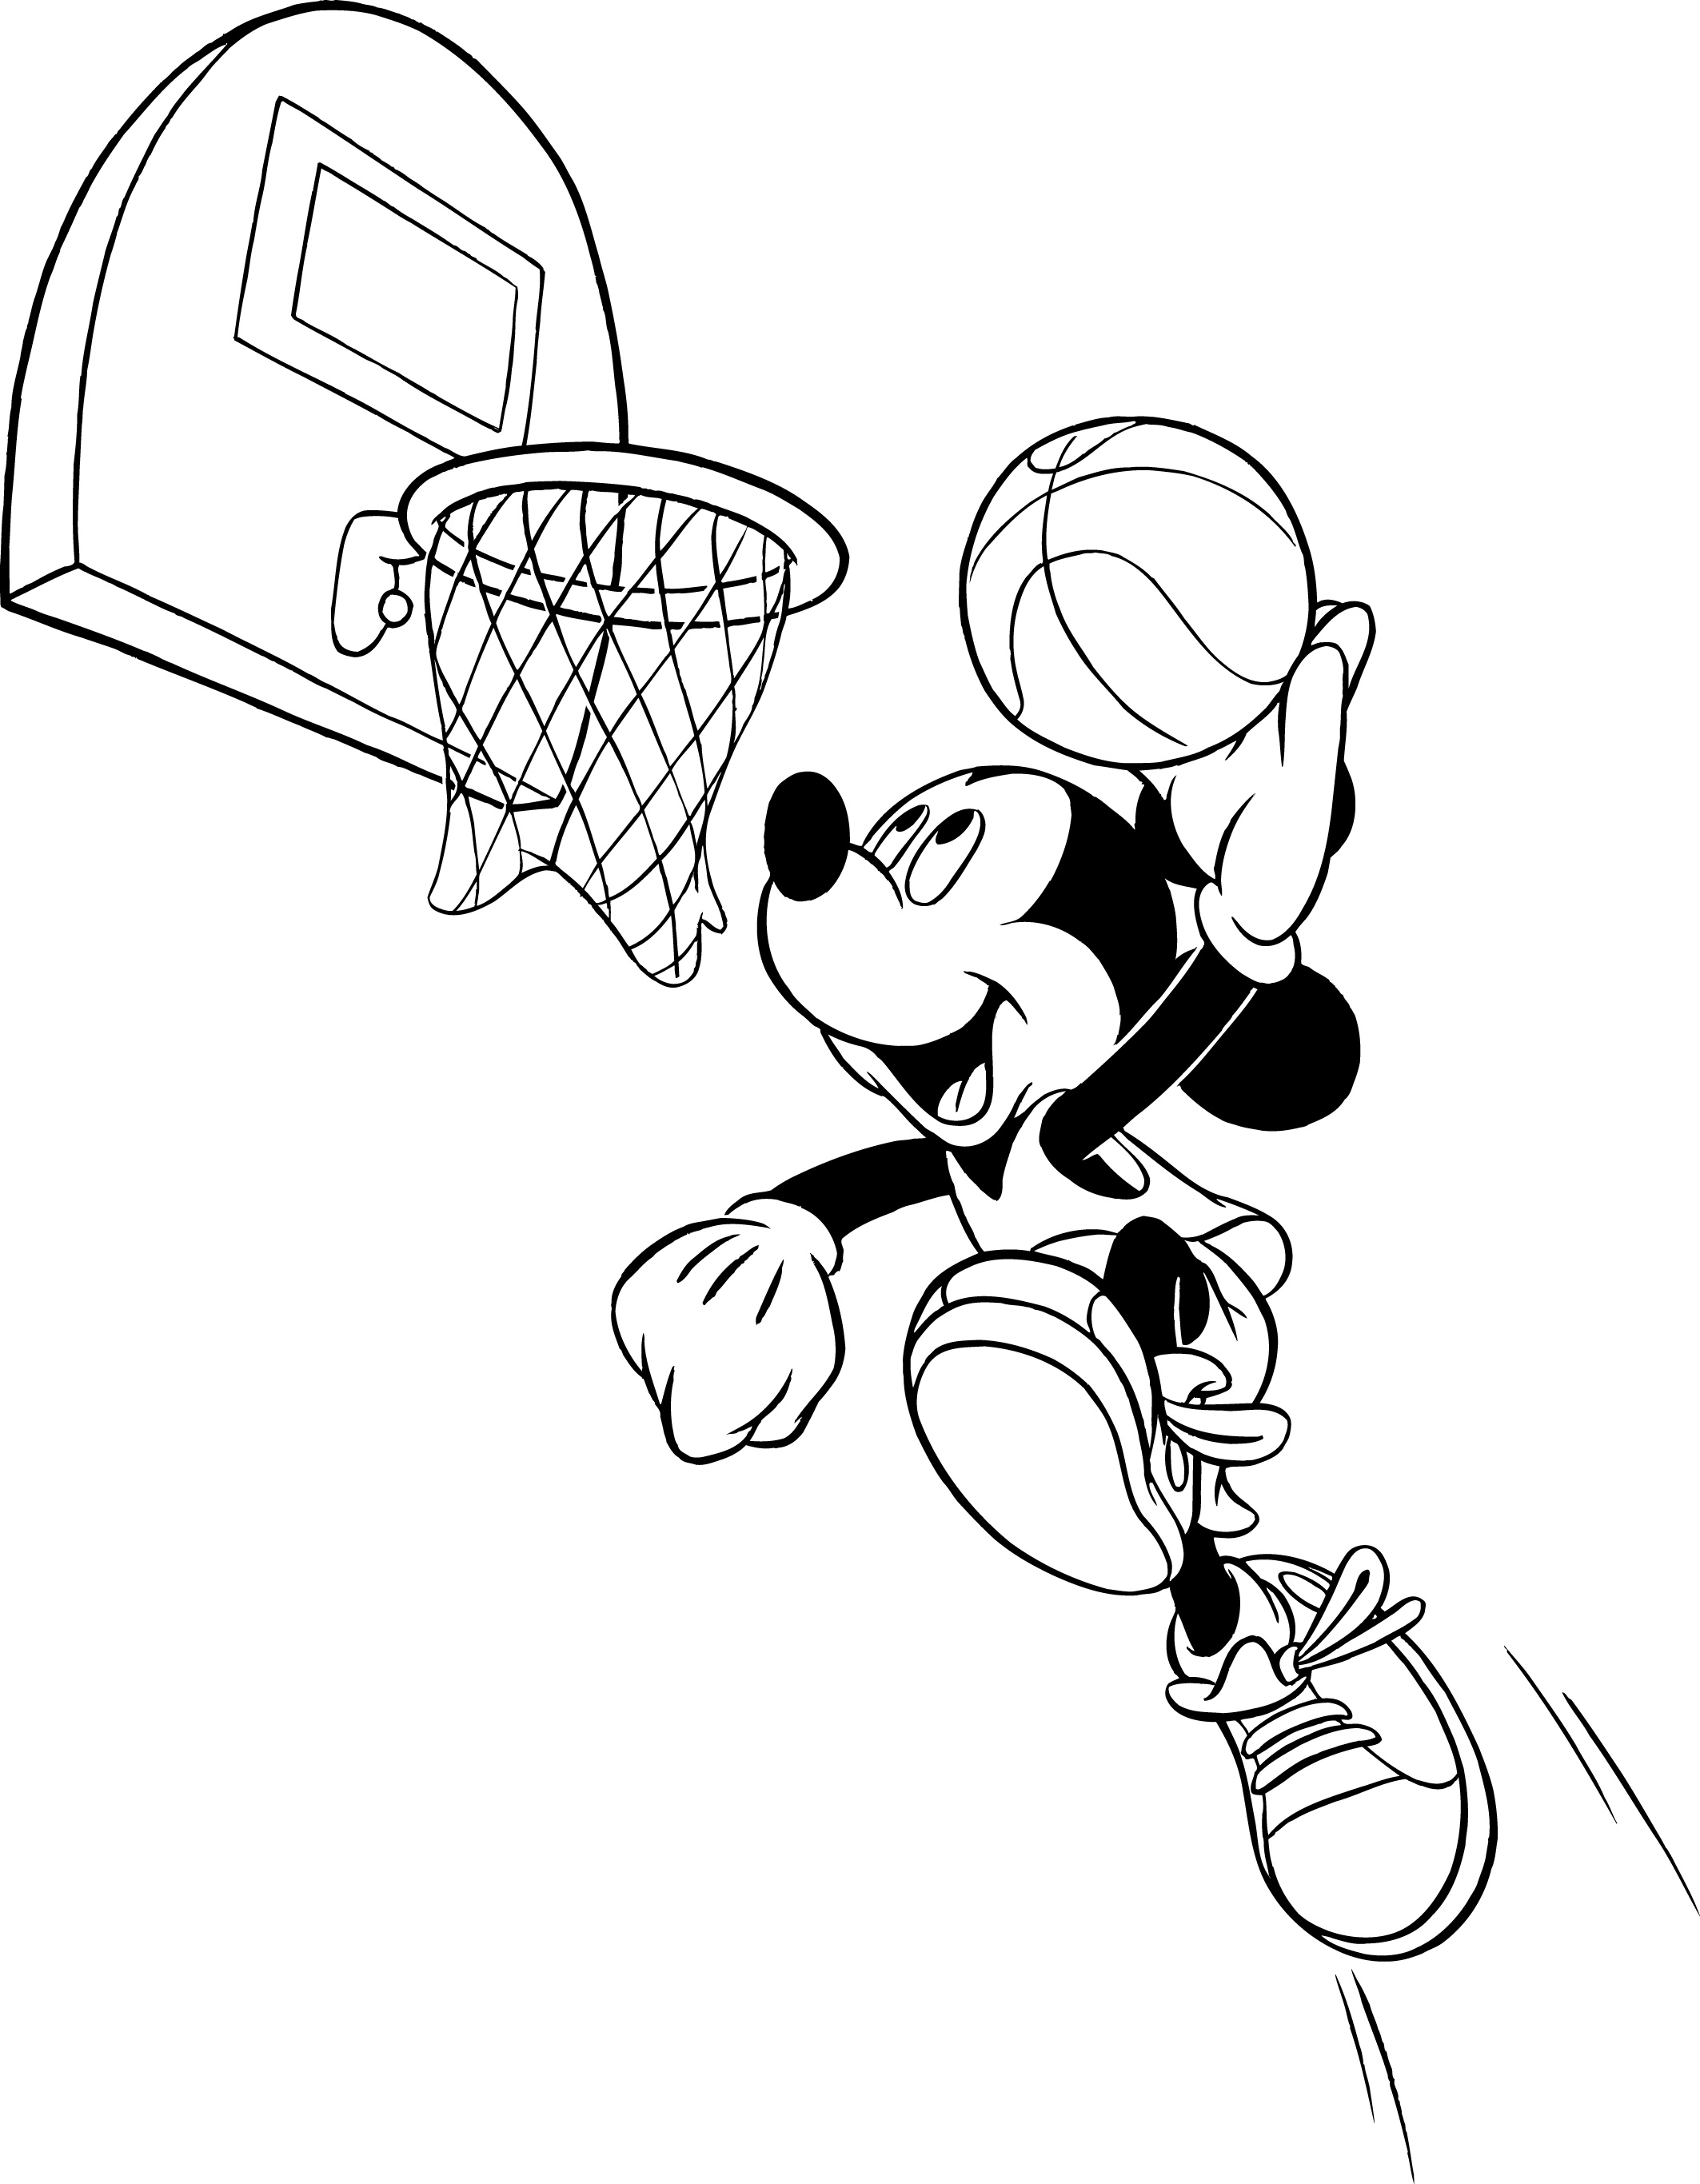 Dessin Basketball Nouveau Photos Coloriage Mickey Basket